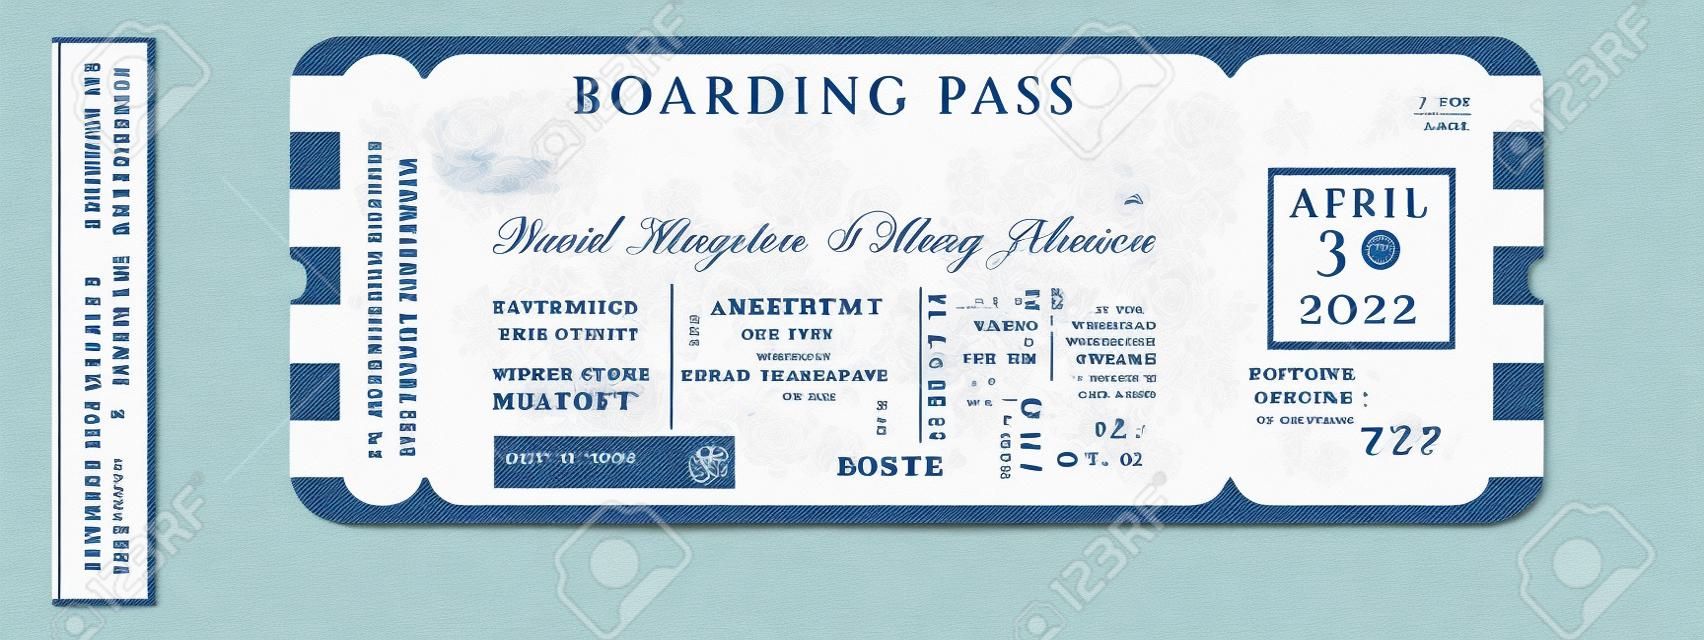 Nautische bruiloft Uitnodiging Vector Set.Boat Boarding Pass ticket sjabloon.Sailor thema in klassieke vintage stijl.Elegante zee uitnodiging kaart overlay in witte en marine blauwe kleuren. Modern luxe design.